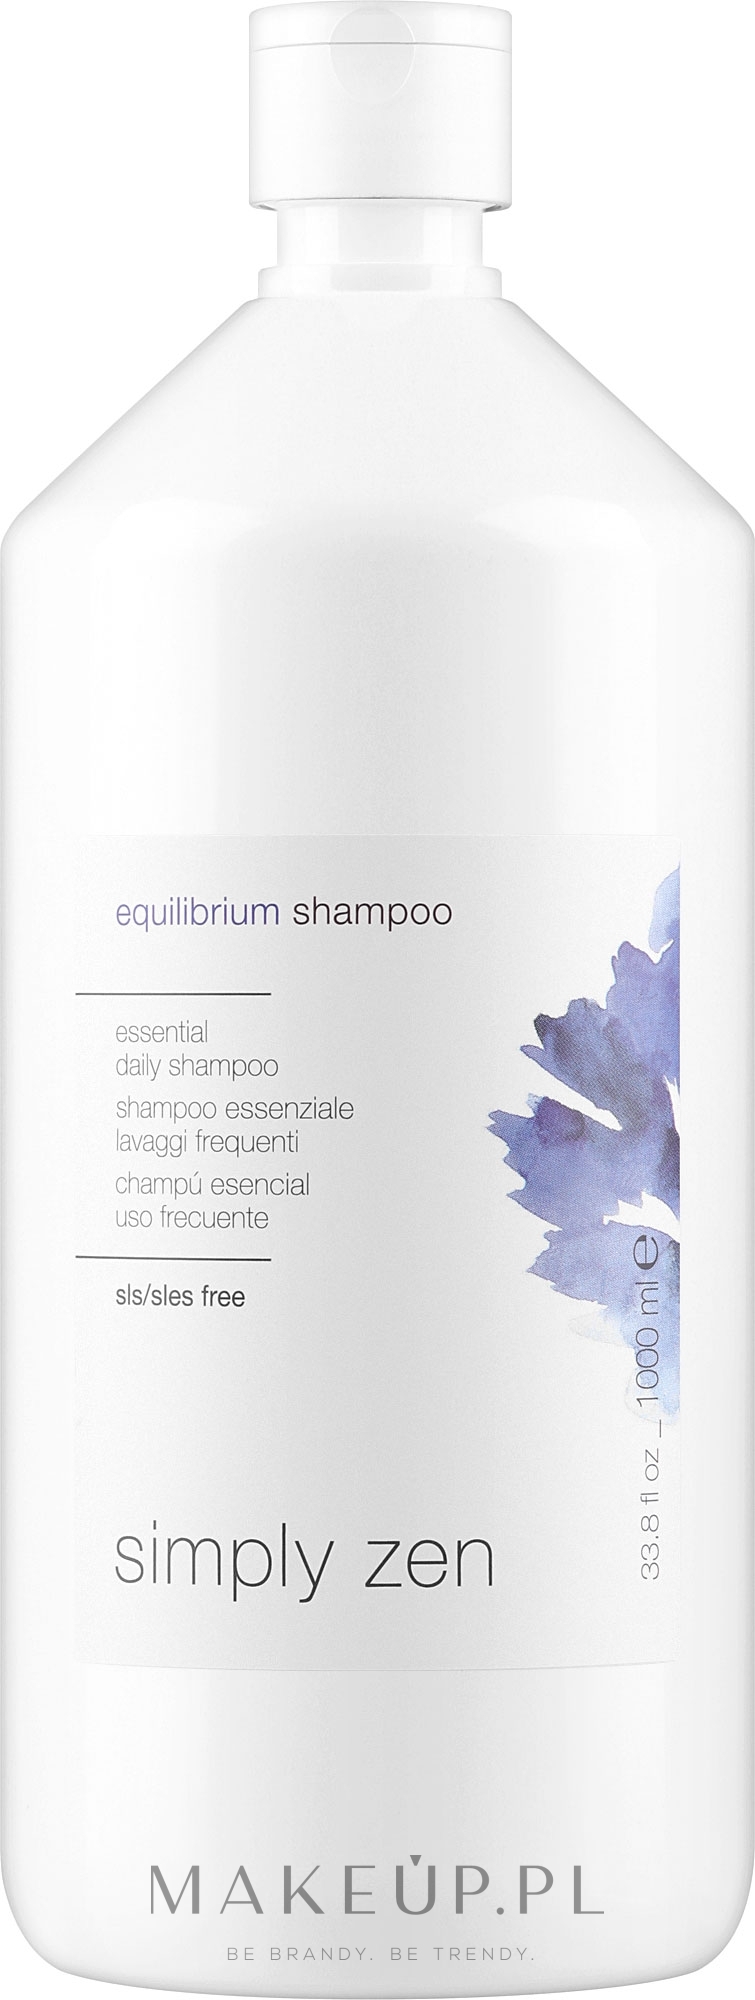 Profilaktyczny szampon do włosów - Z. One Concept Simply Zen Equilibrium Shampoo  — Zdjęcie 1000 ml